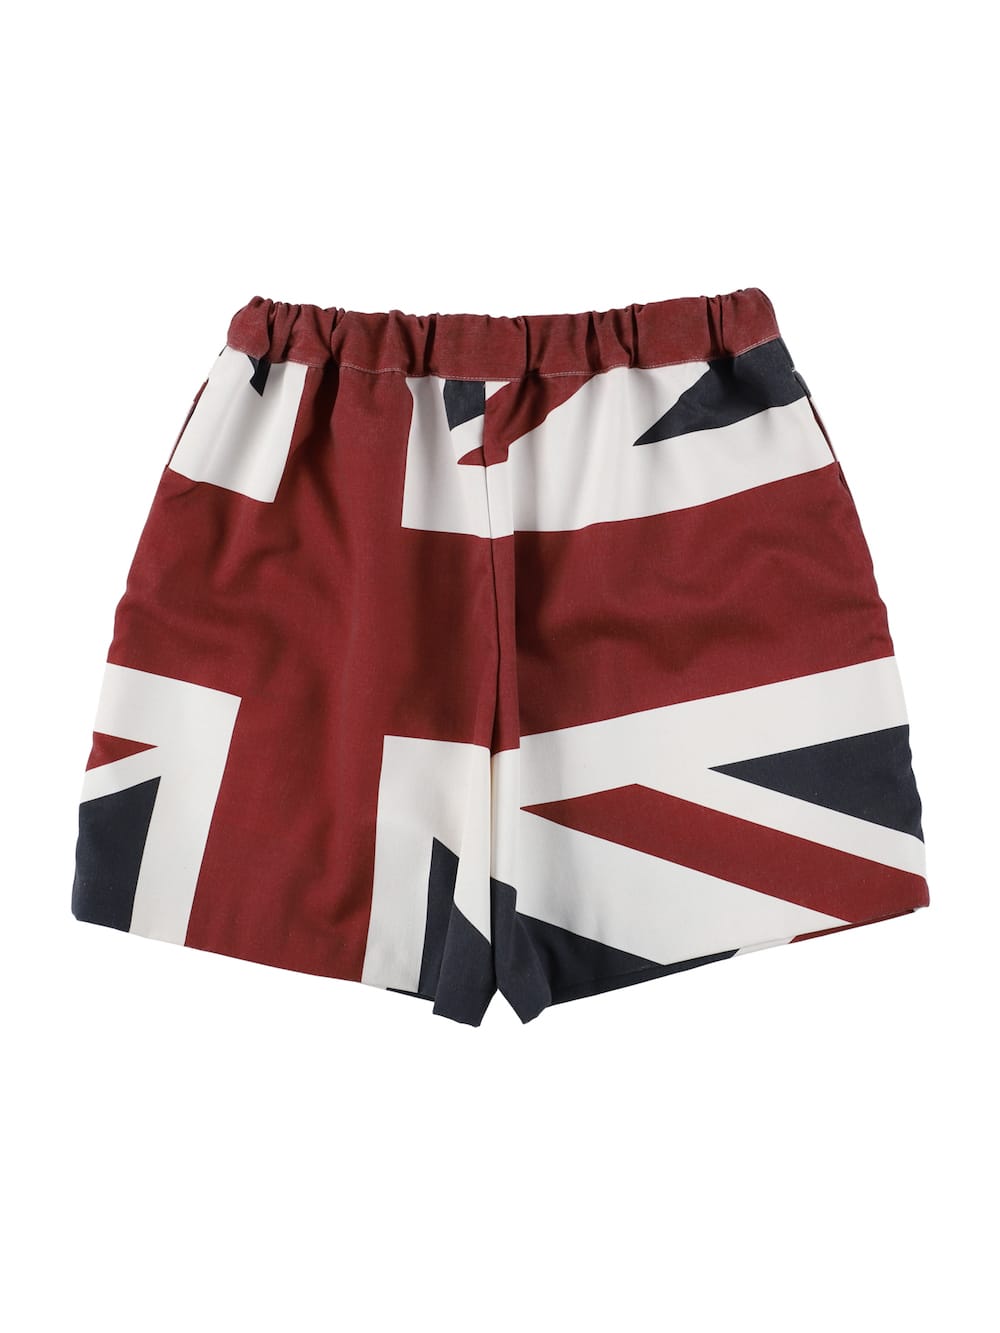 trunks shorts.(union jack)